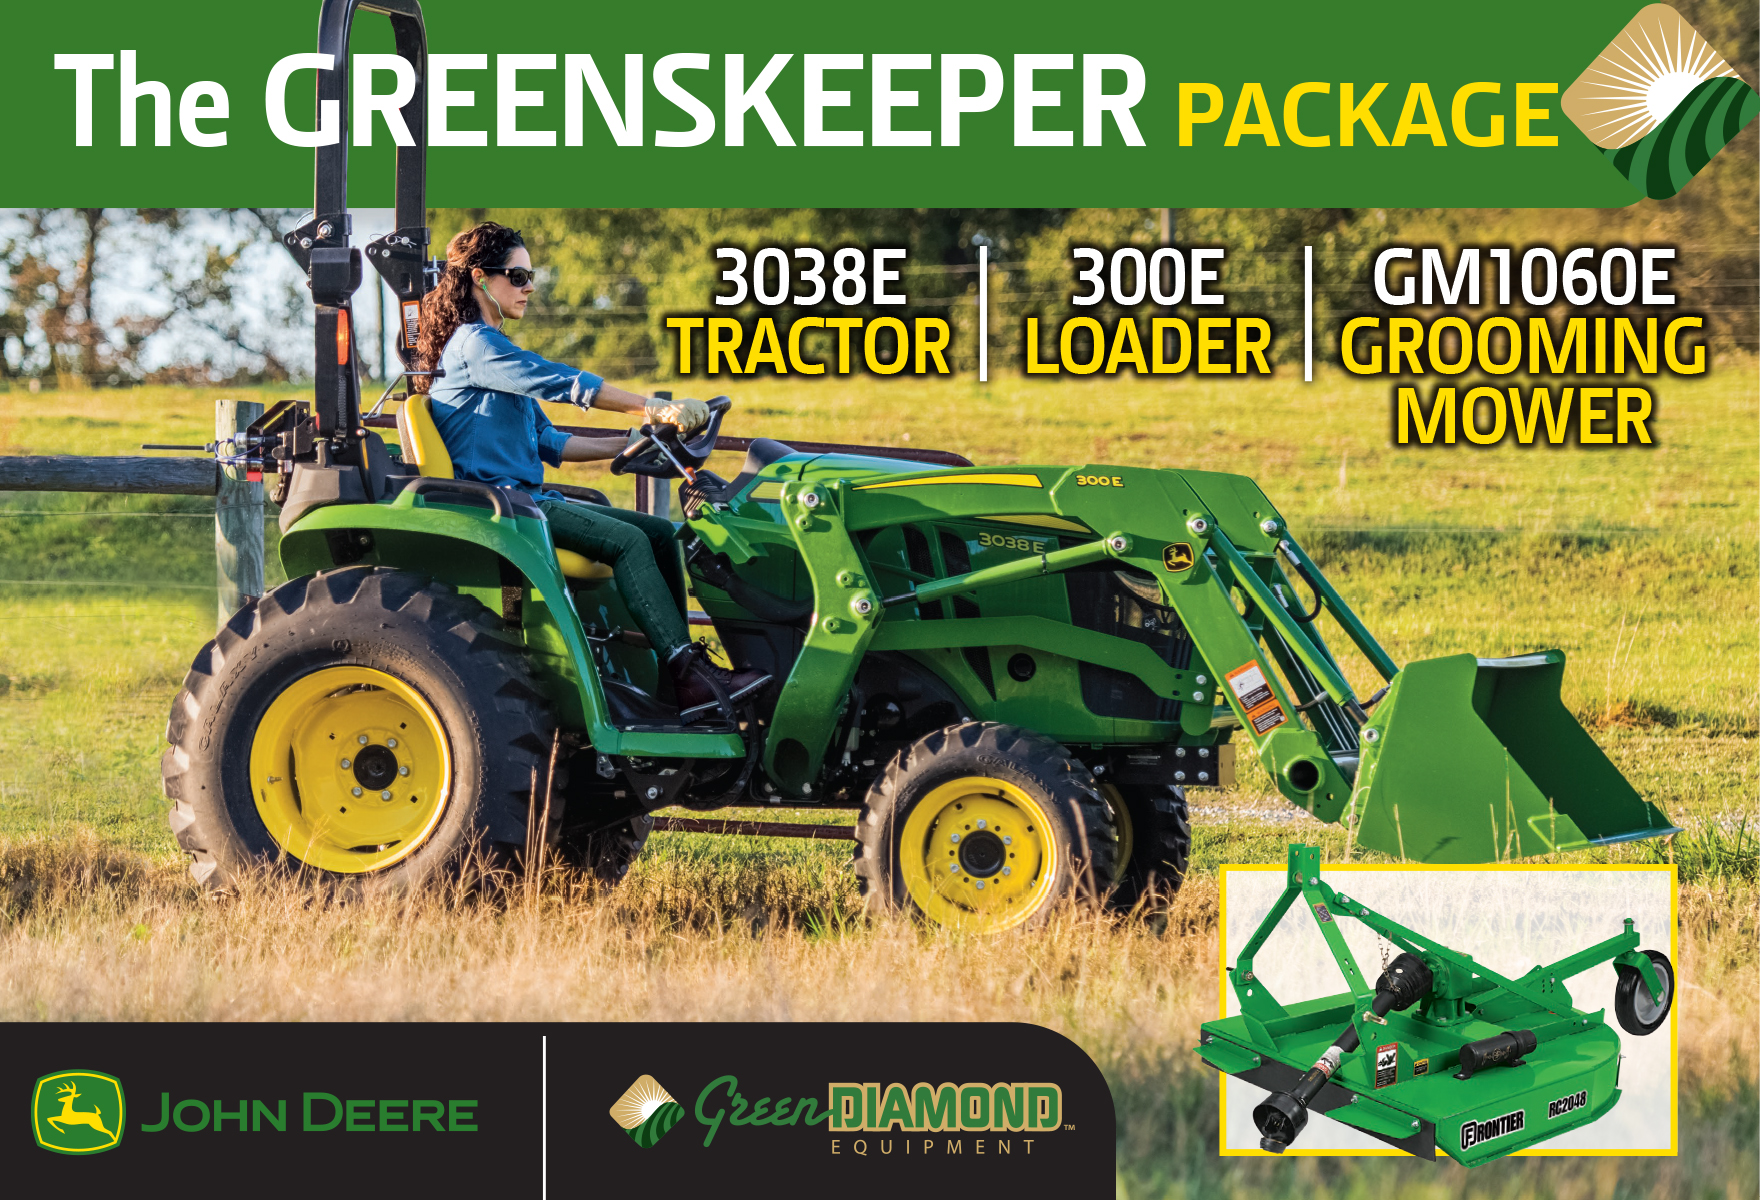 The Greenskeeper Package